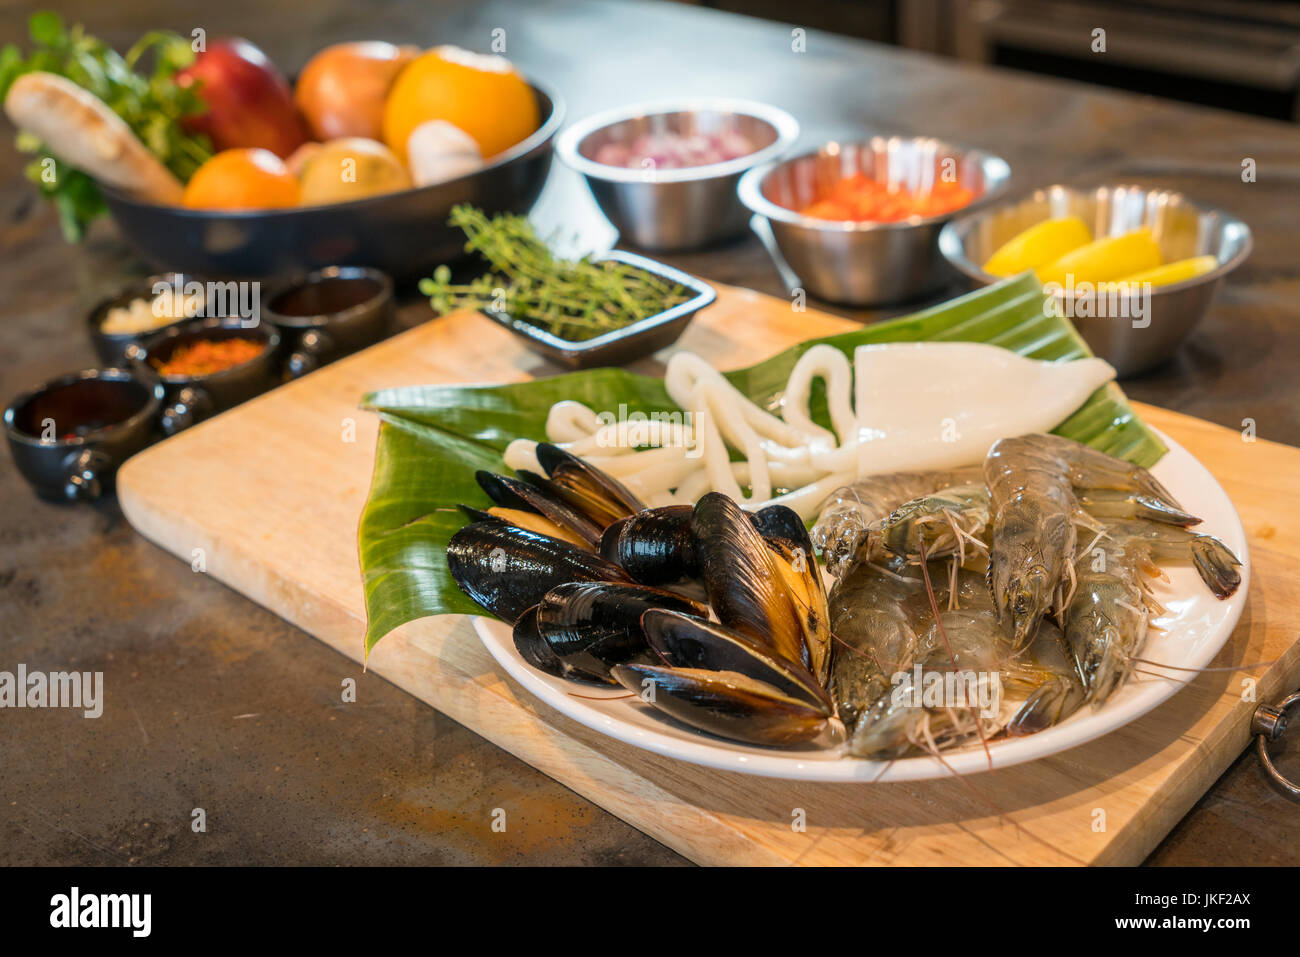 Les fruits de mer crus sur la plaque avec des fruits et légumes, aliments sains, palourdes, crevettes calmar. Banque D'Images